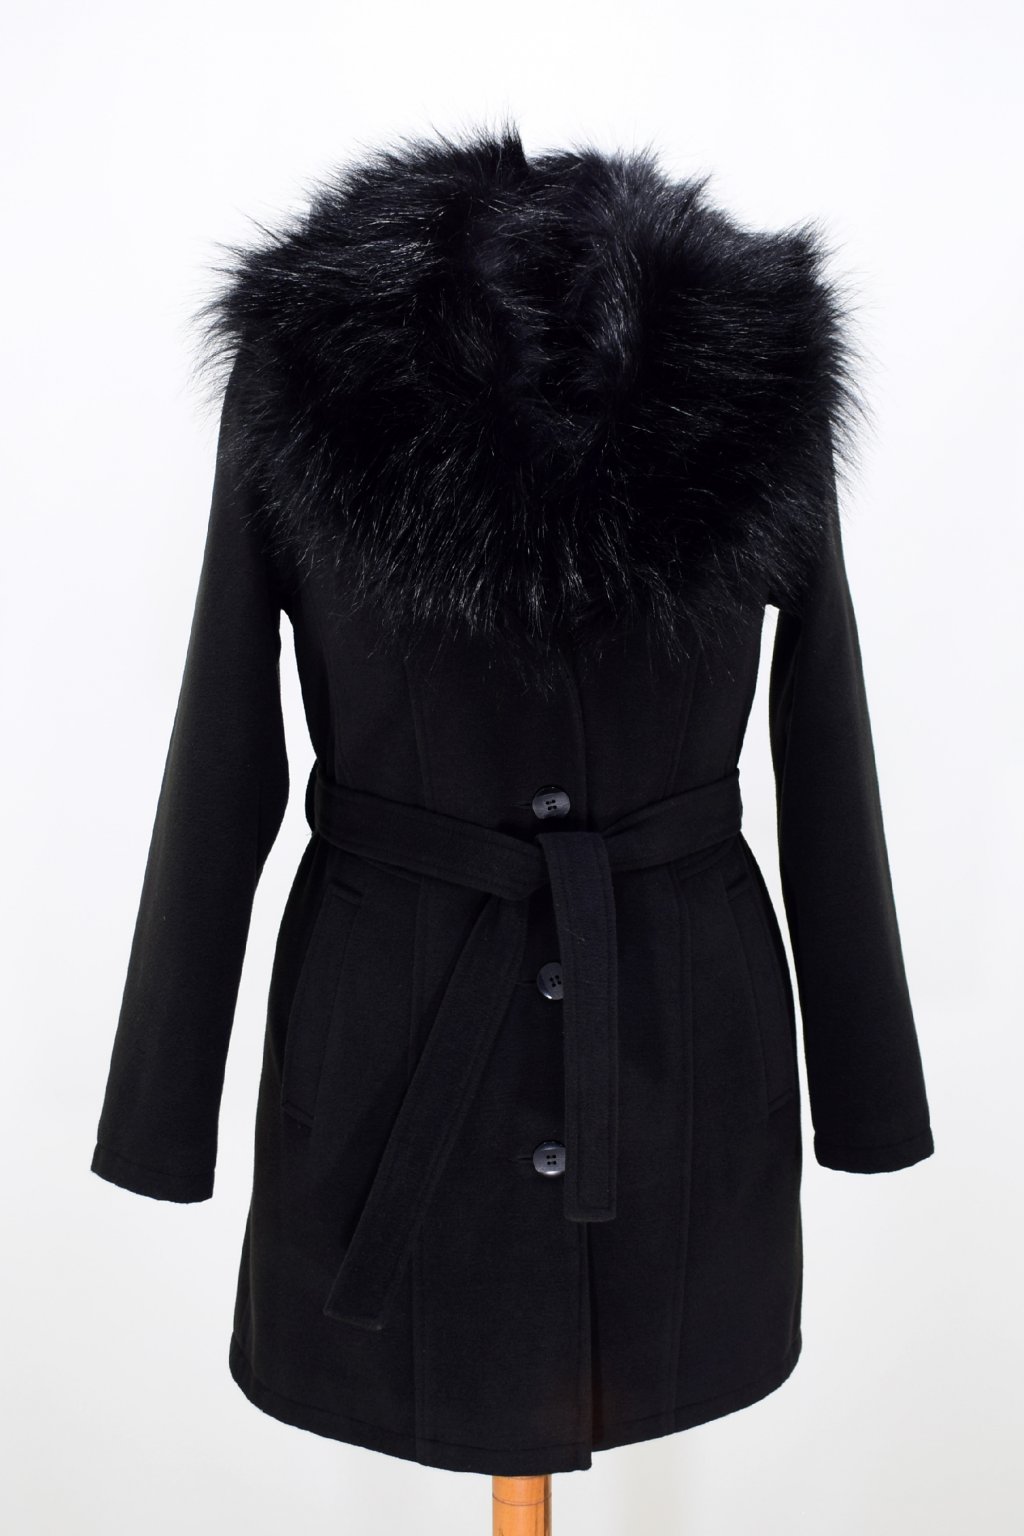 Dámský černý zimní kabát s kožešinou Julie. - Vlastimil Žákovský - nadměrné  velikosti